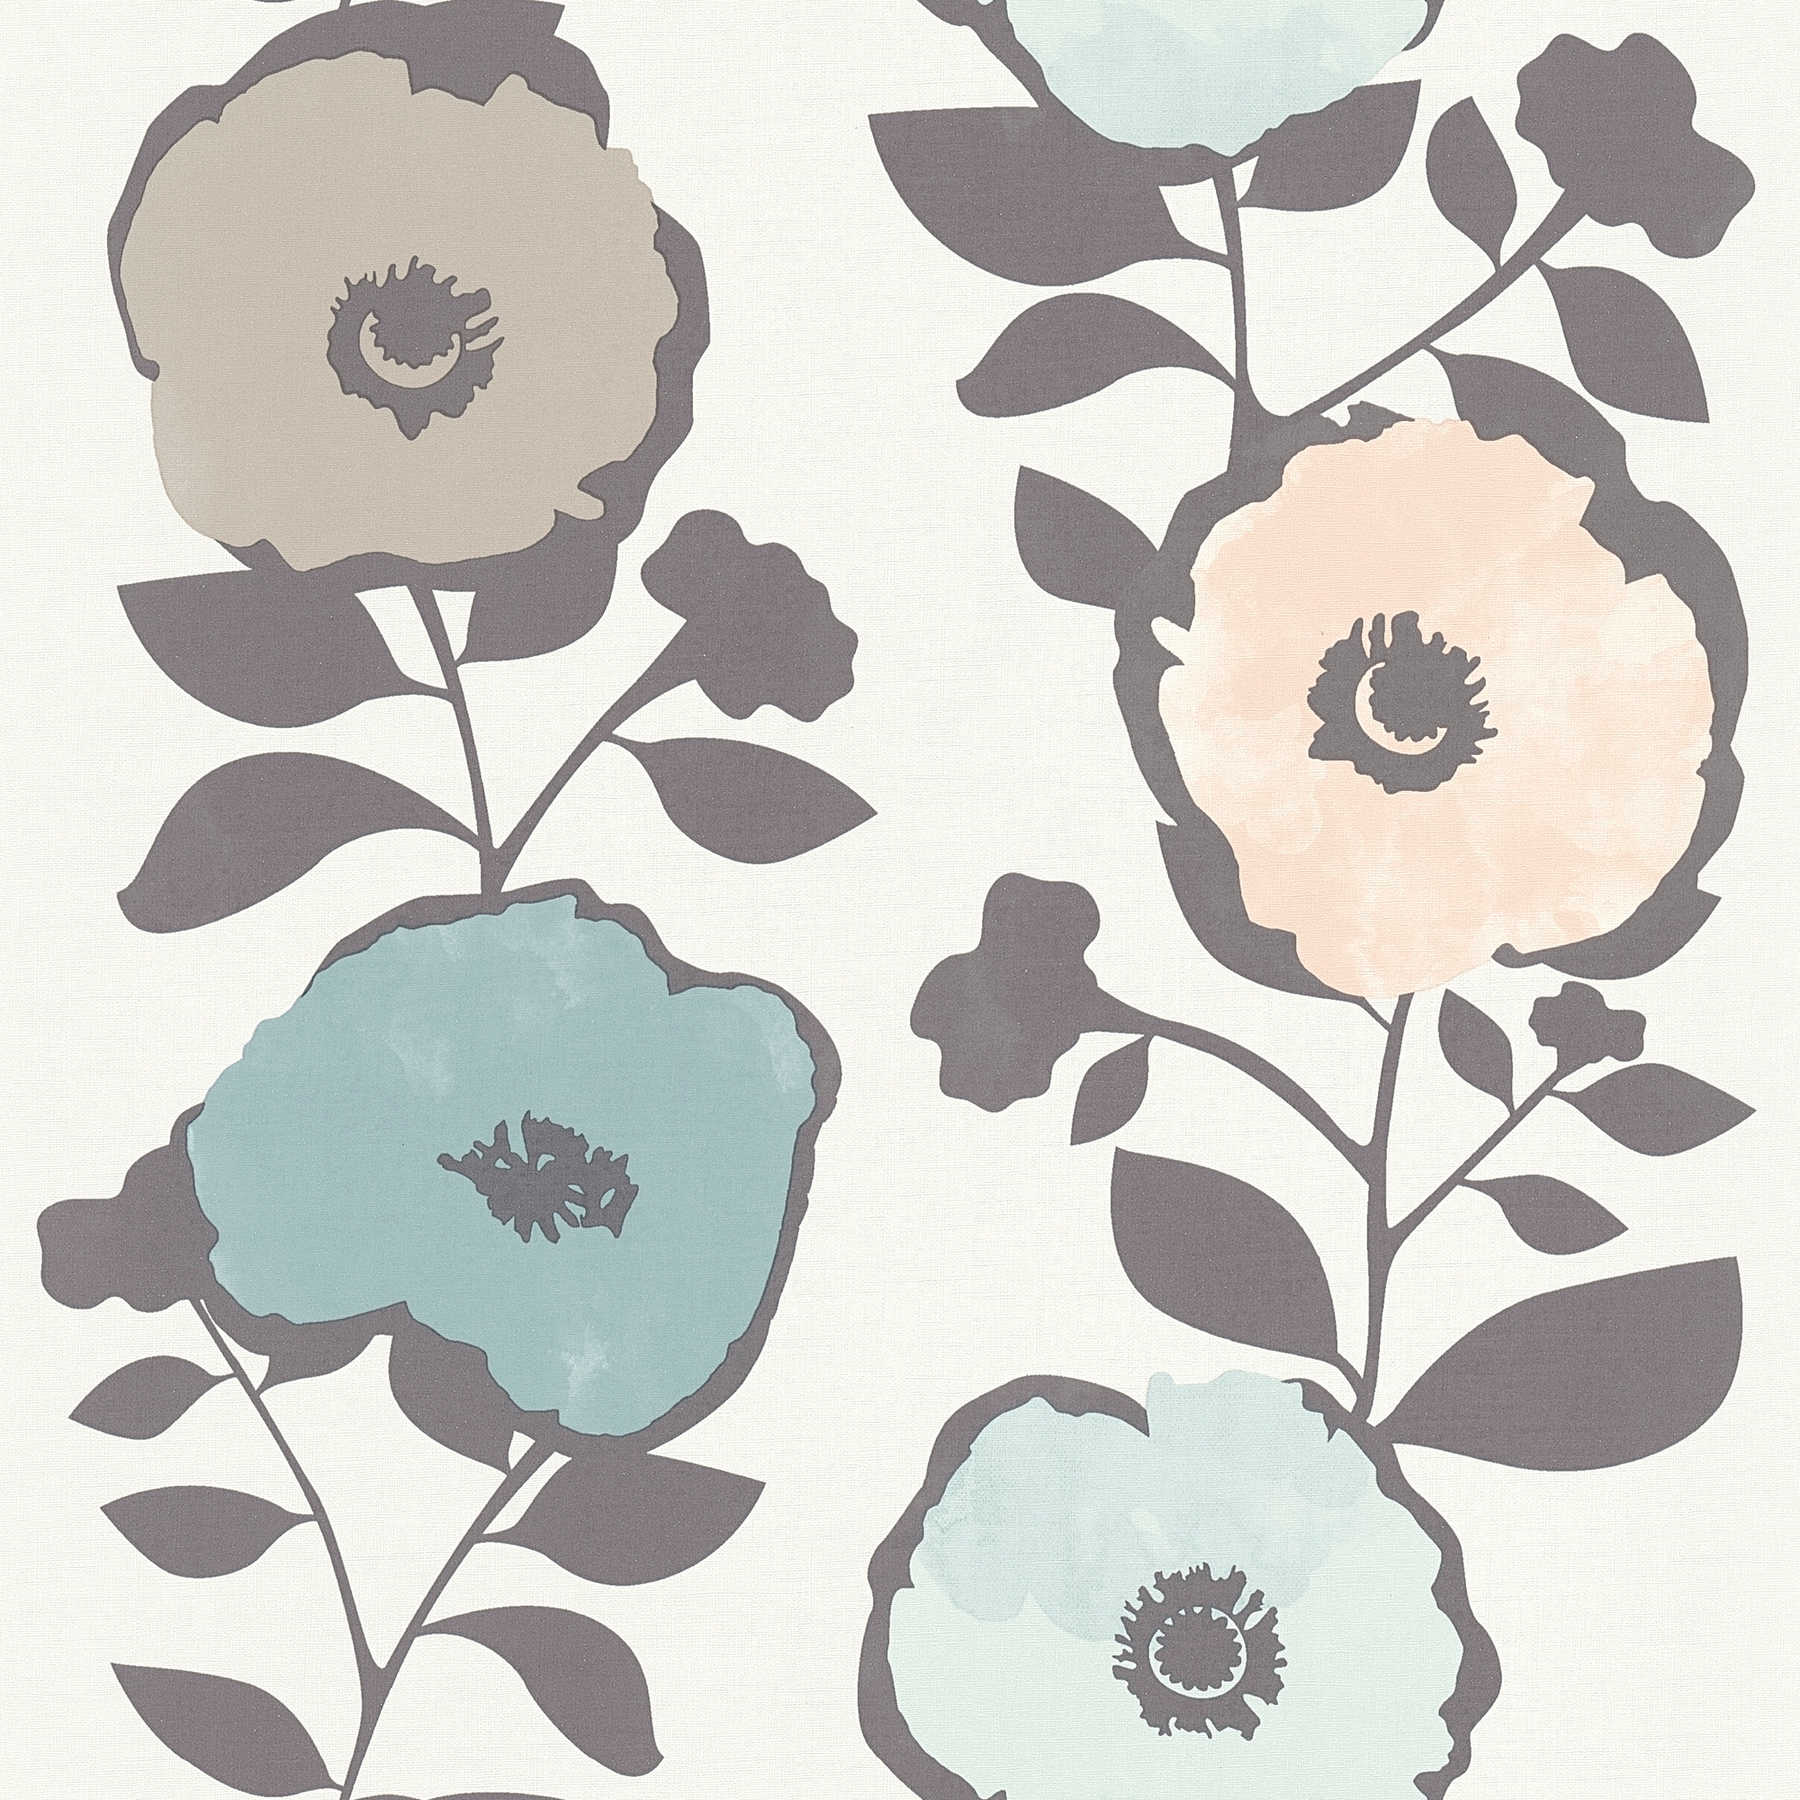             Tapete Blumen Dekor im Skandinavien Stil – Beige, Grau
        